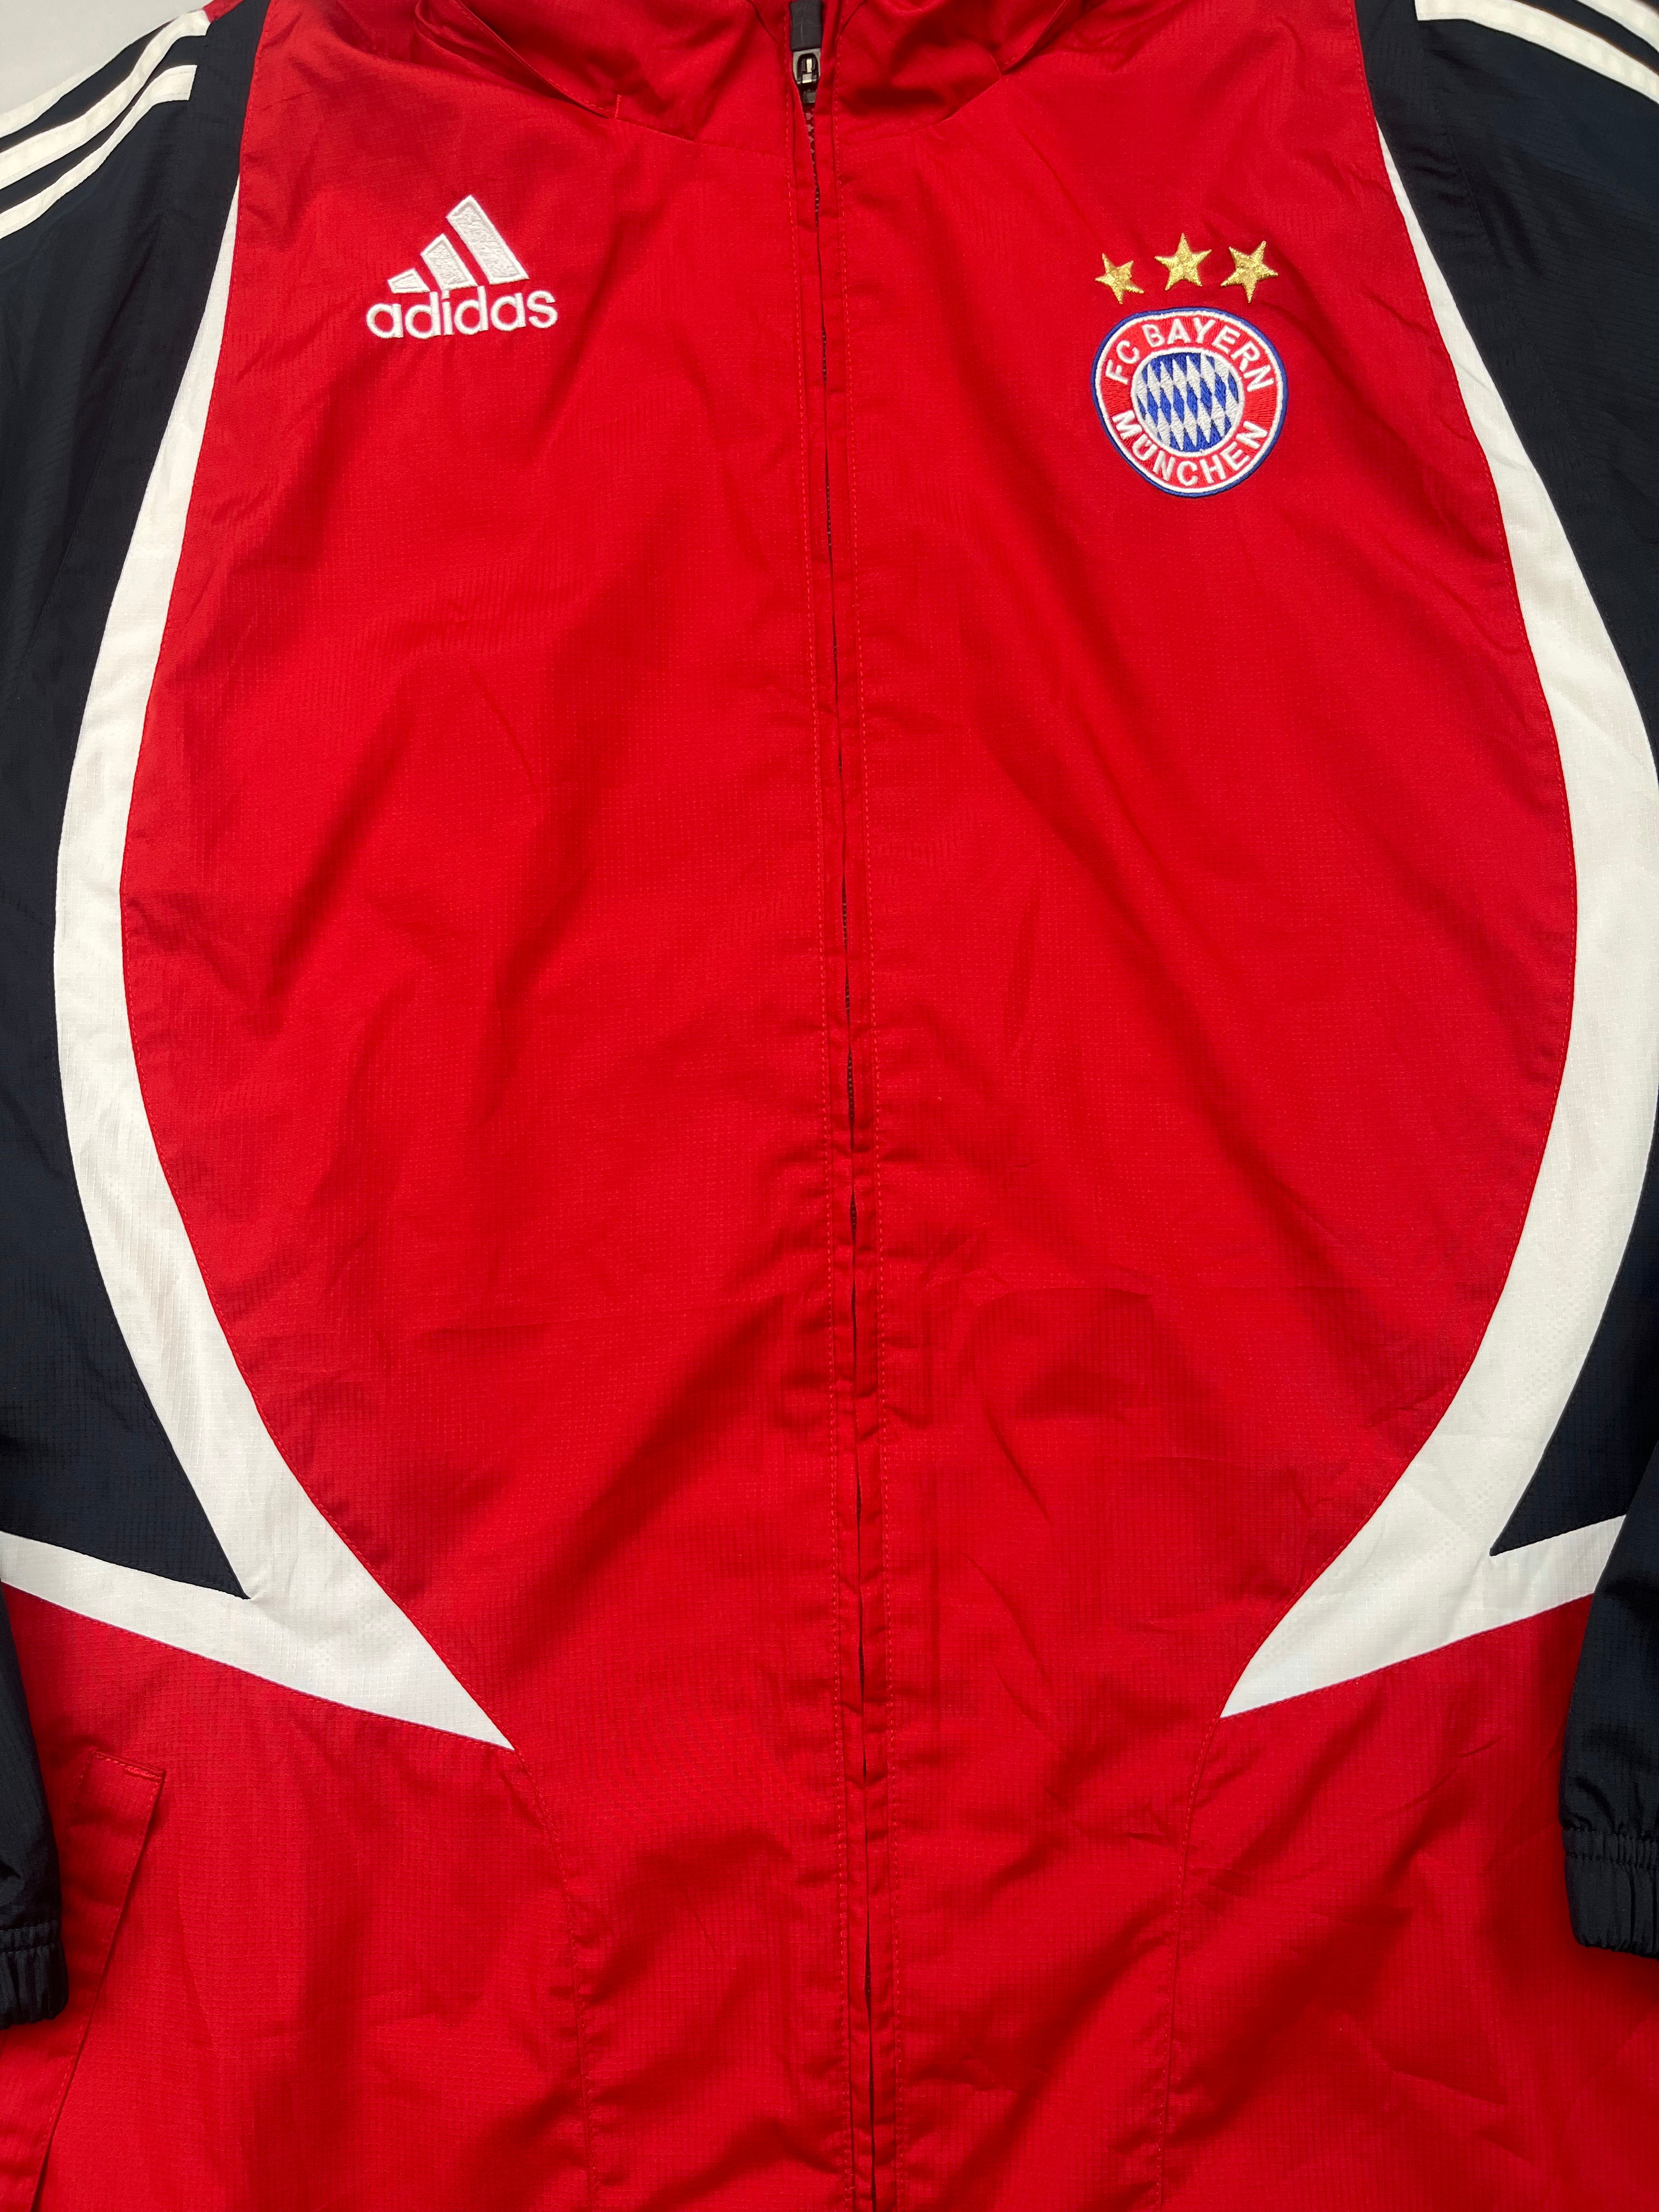 Veste d'entraînement du Bayern Munich 2006/07 (L/XL) 9/10